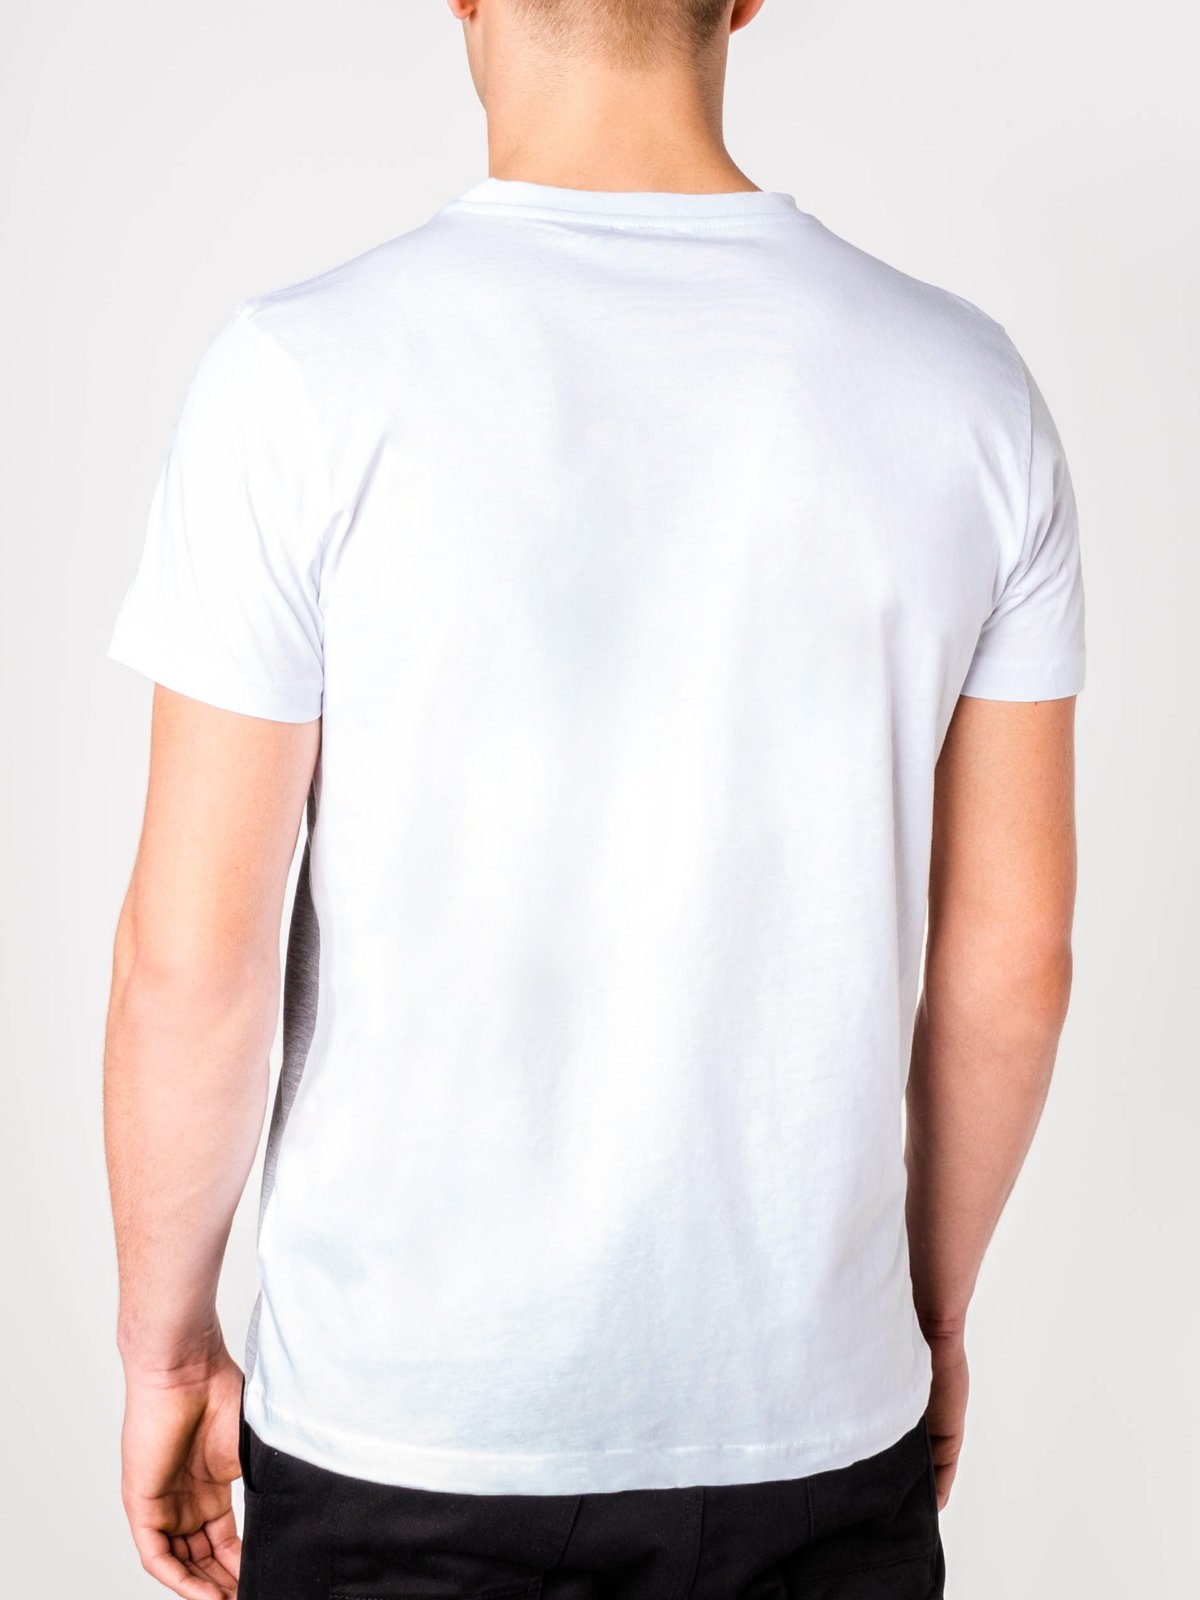 Men's plain t-shirt S844 - blue/grey | MODONE wholesale - Clothing For Men